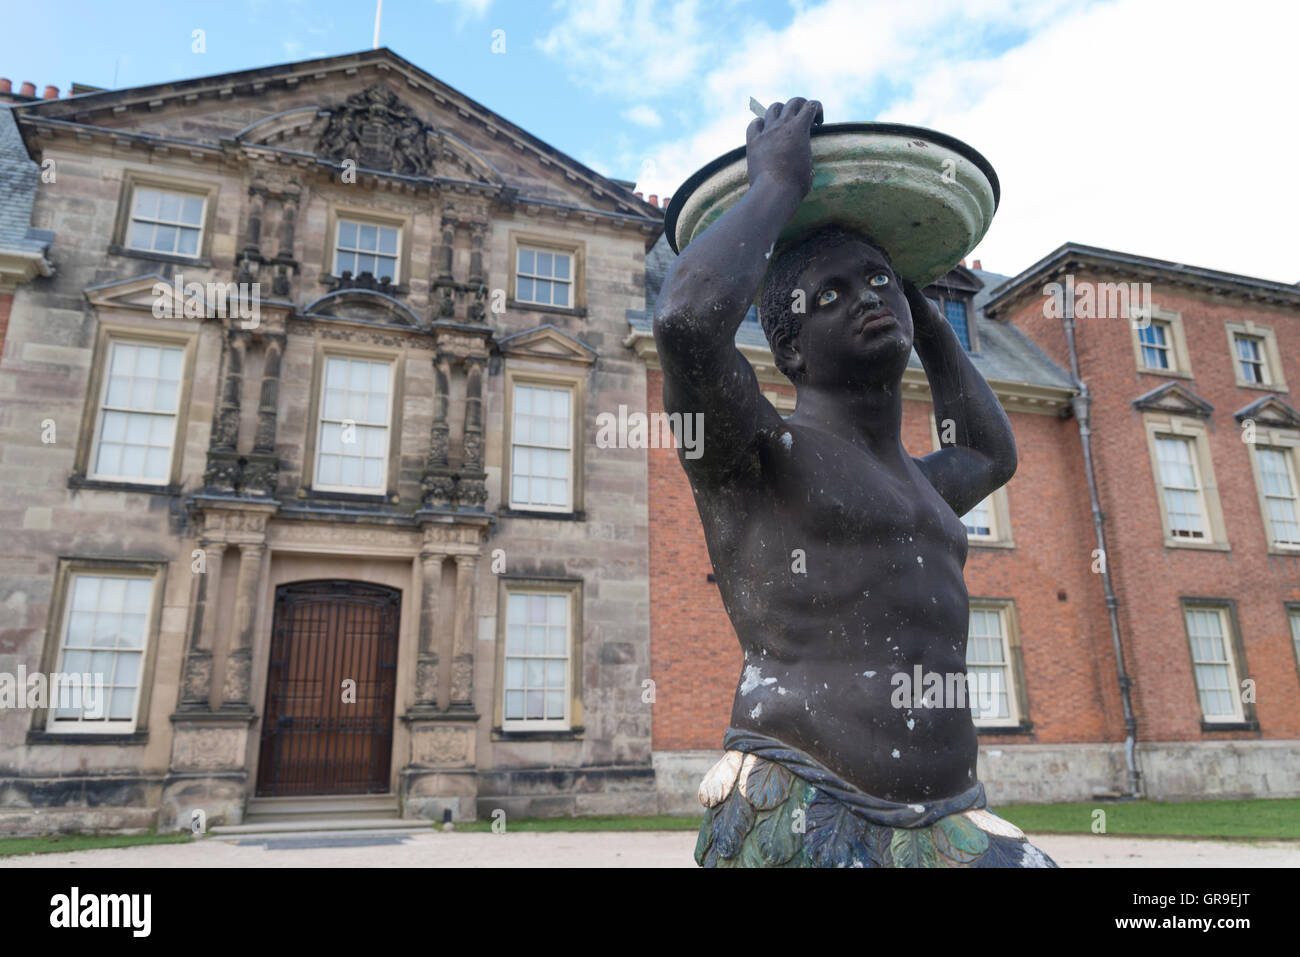 Statua di Moro africana al di fuori del Dunham Massey Hall una casa di paese inglese / dimora signorile in Trafford, Altrincham, Cheshire Foto Stock